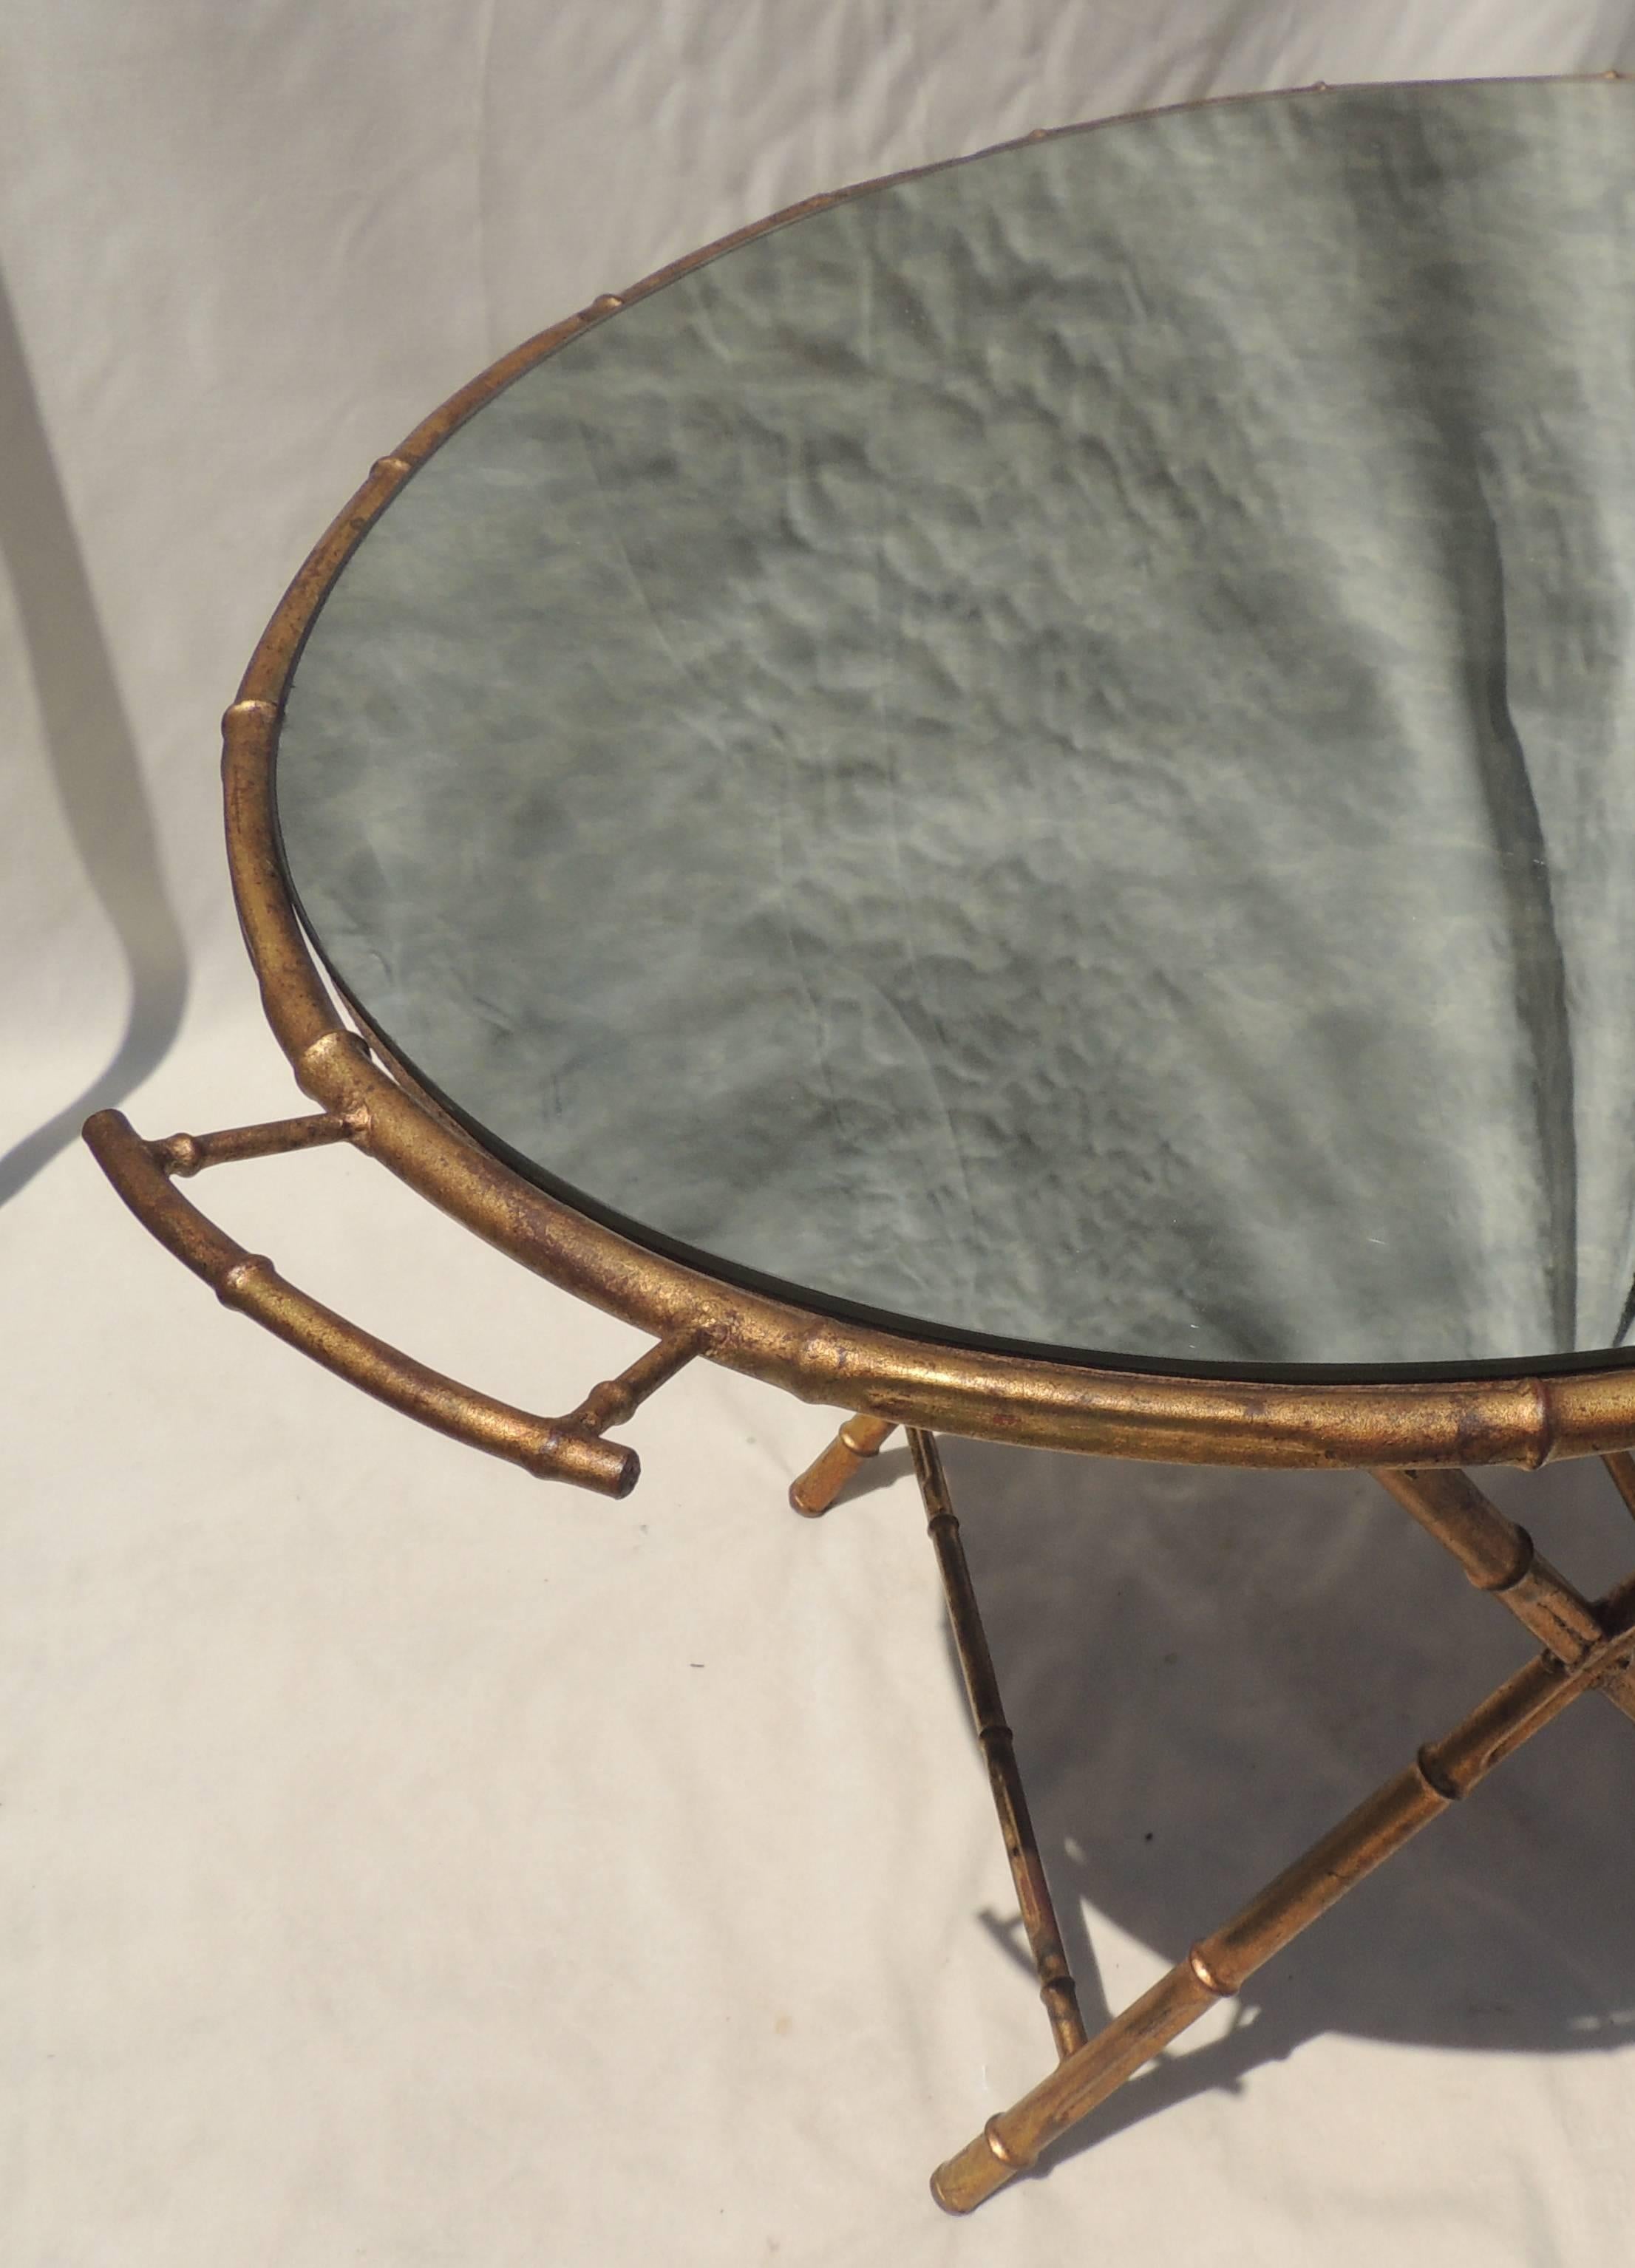 Eine wunderbare vergoldete tole Bagues, Jansen Stil Bambus Form Vintage gespiegelt abnehmbaren Tablett oben serviert Beistelltisch fertig mit Griffen an beiden Enden.